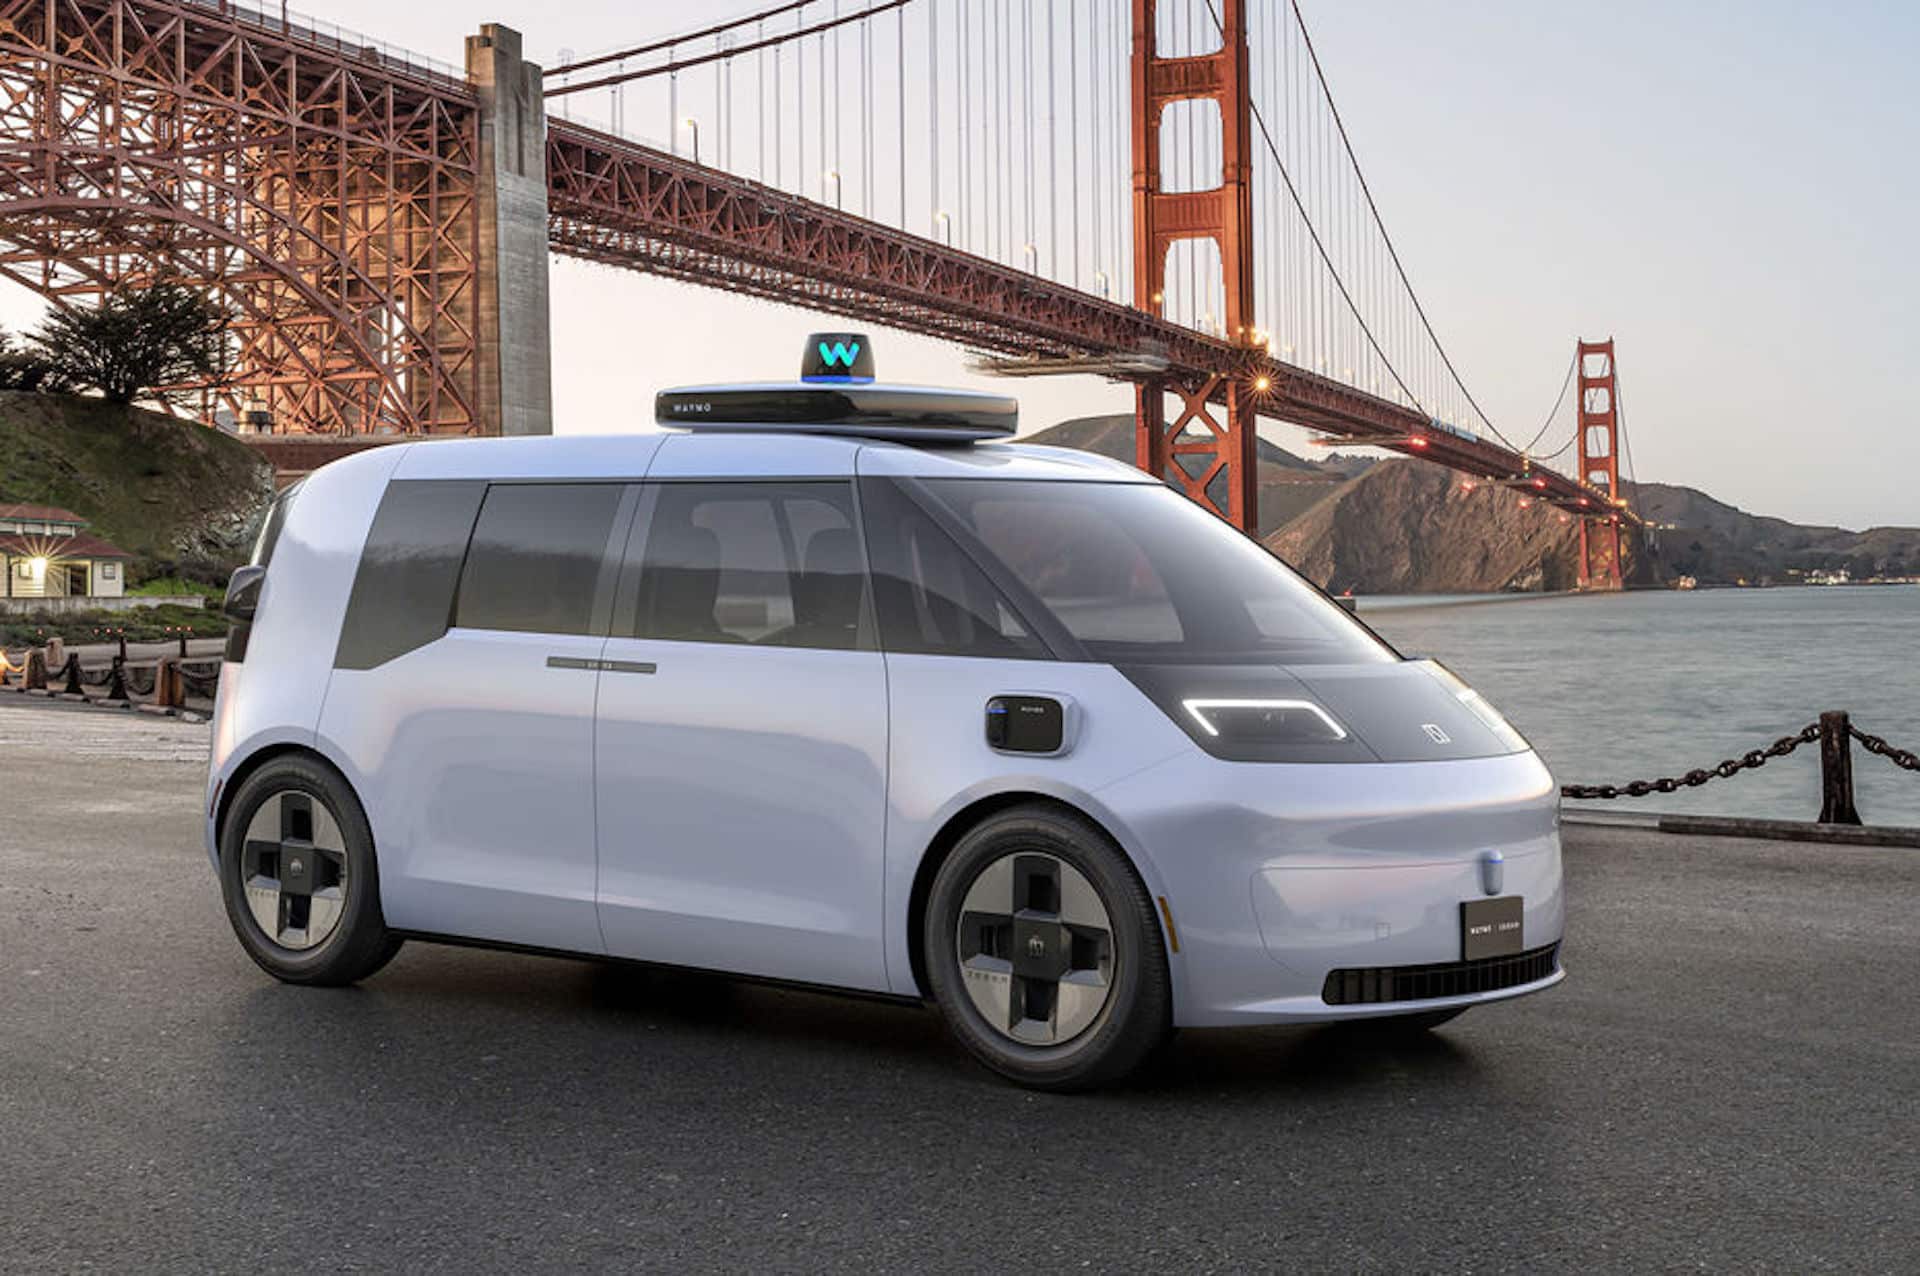 Aperçu du futur véhicule autonome de Waymo.